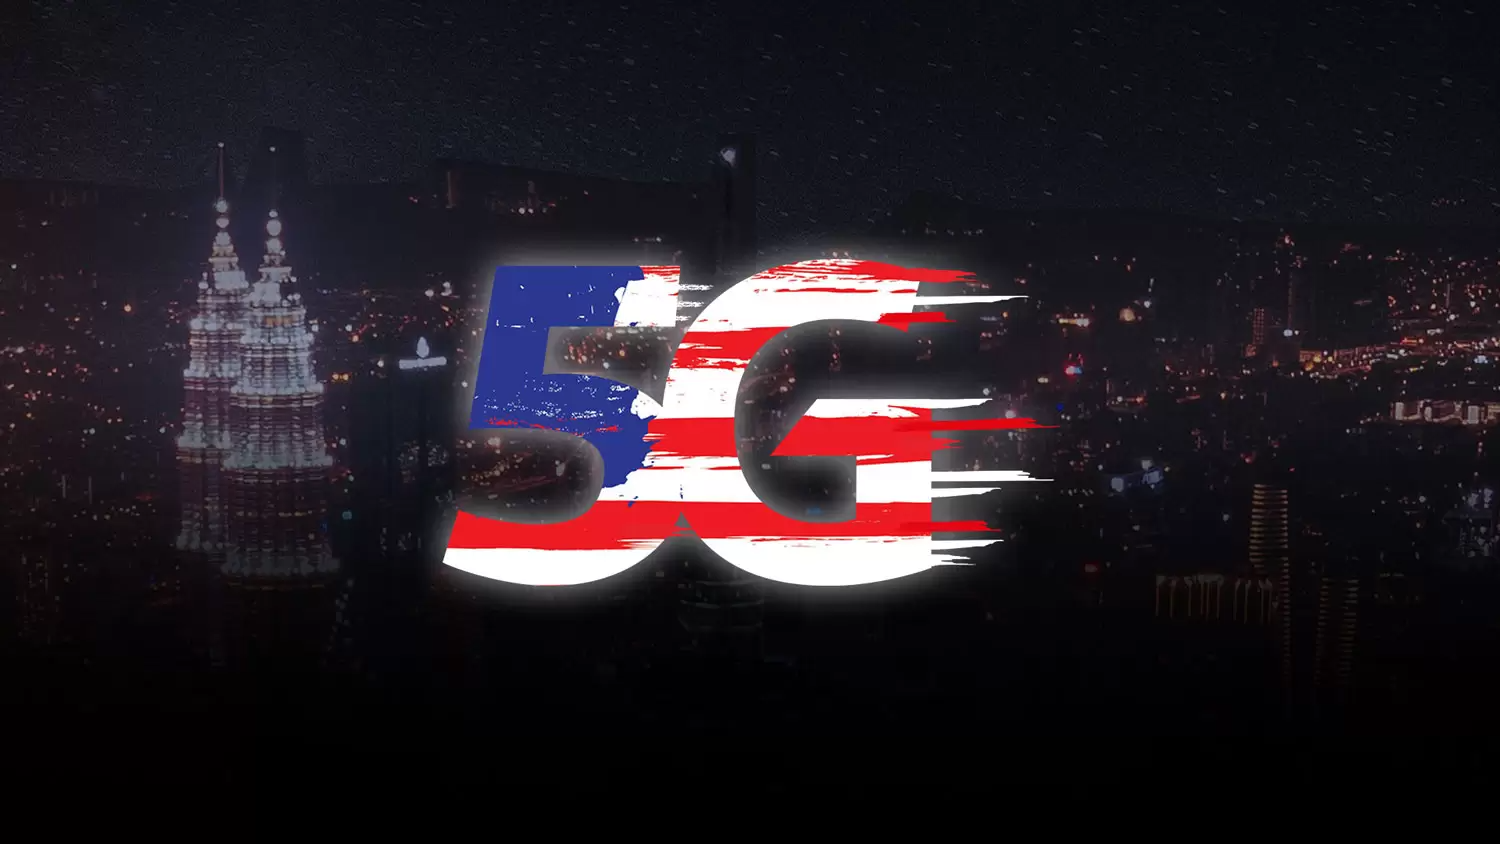 5G Malaysia